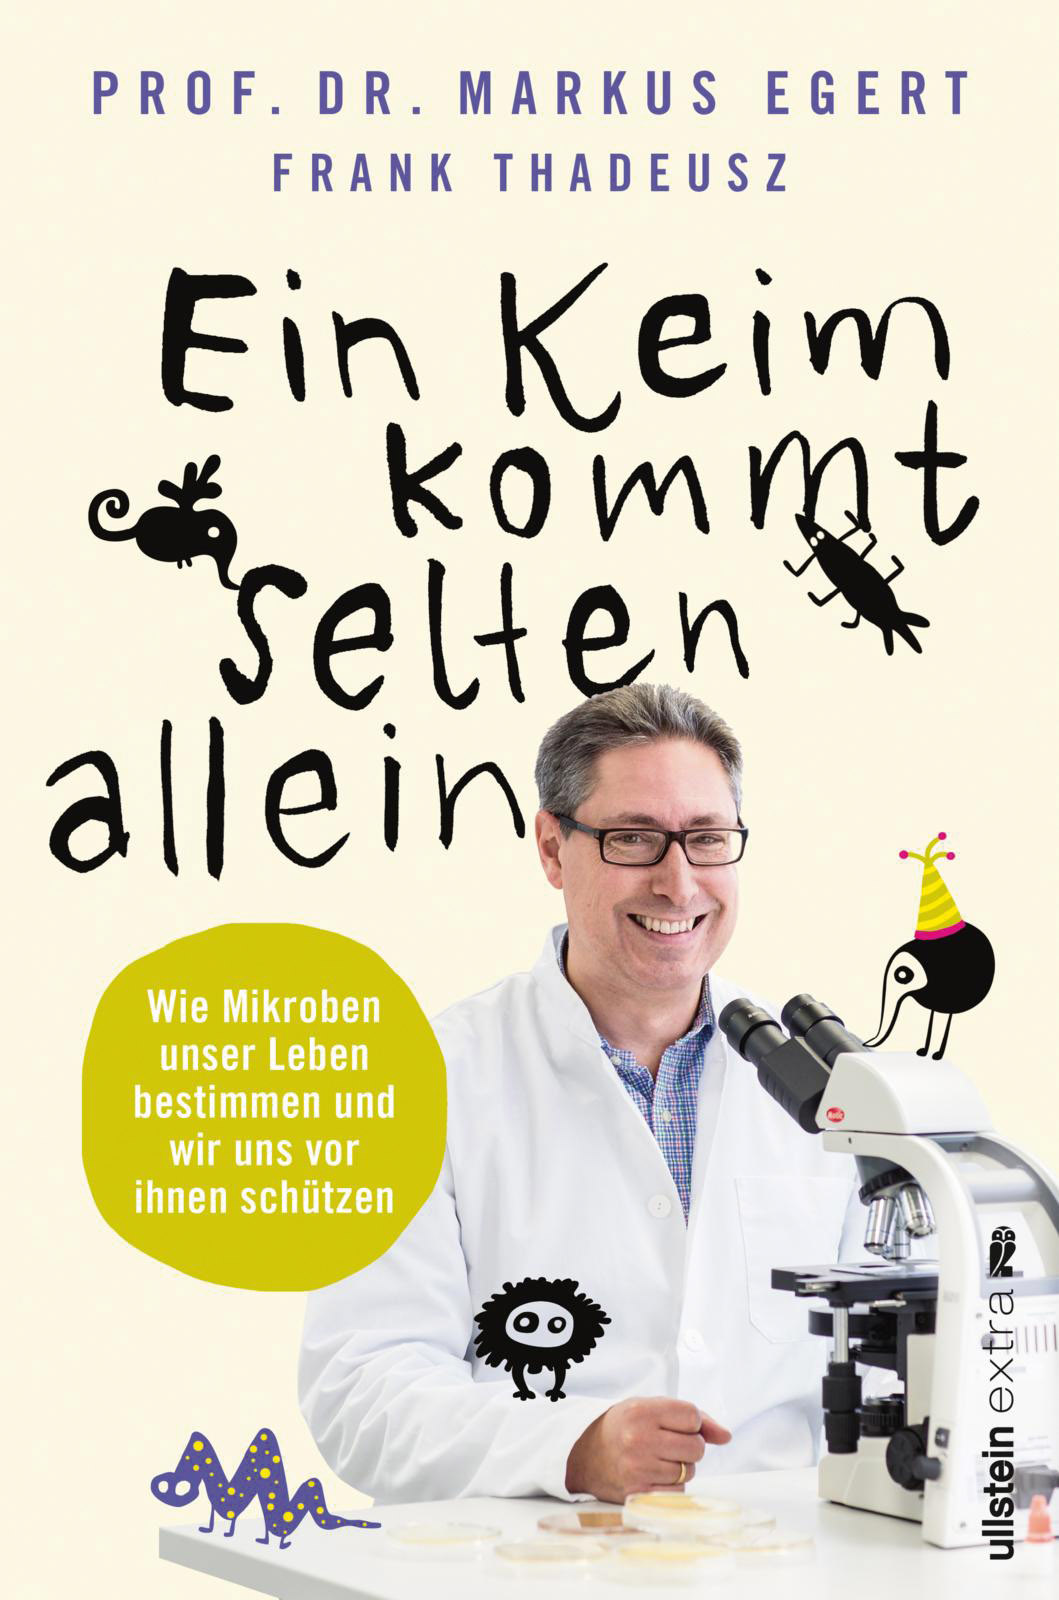 Prof. Dr. Markus Egert und Frank Thadeusz (2018) Ein Keim kommt selten allein. Berlin: Ullstein extra, 252 Seiten, 15 €